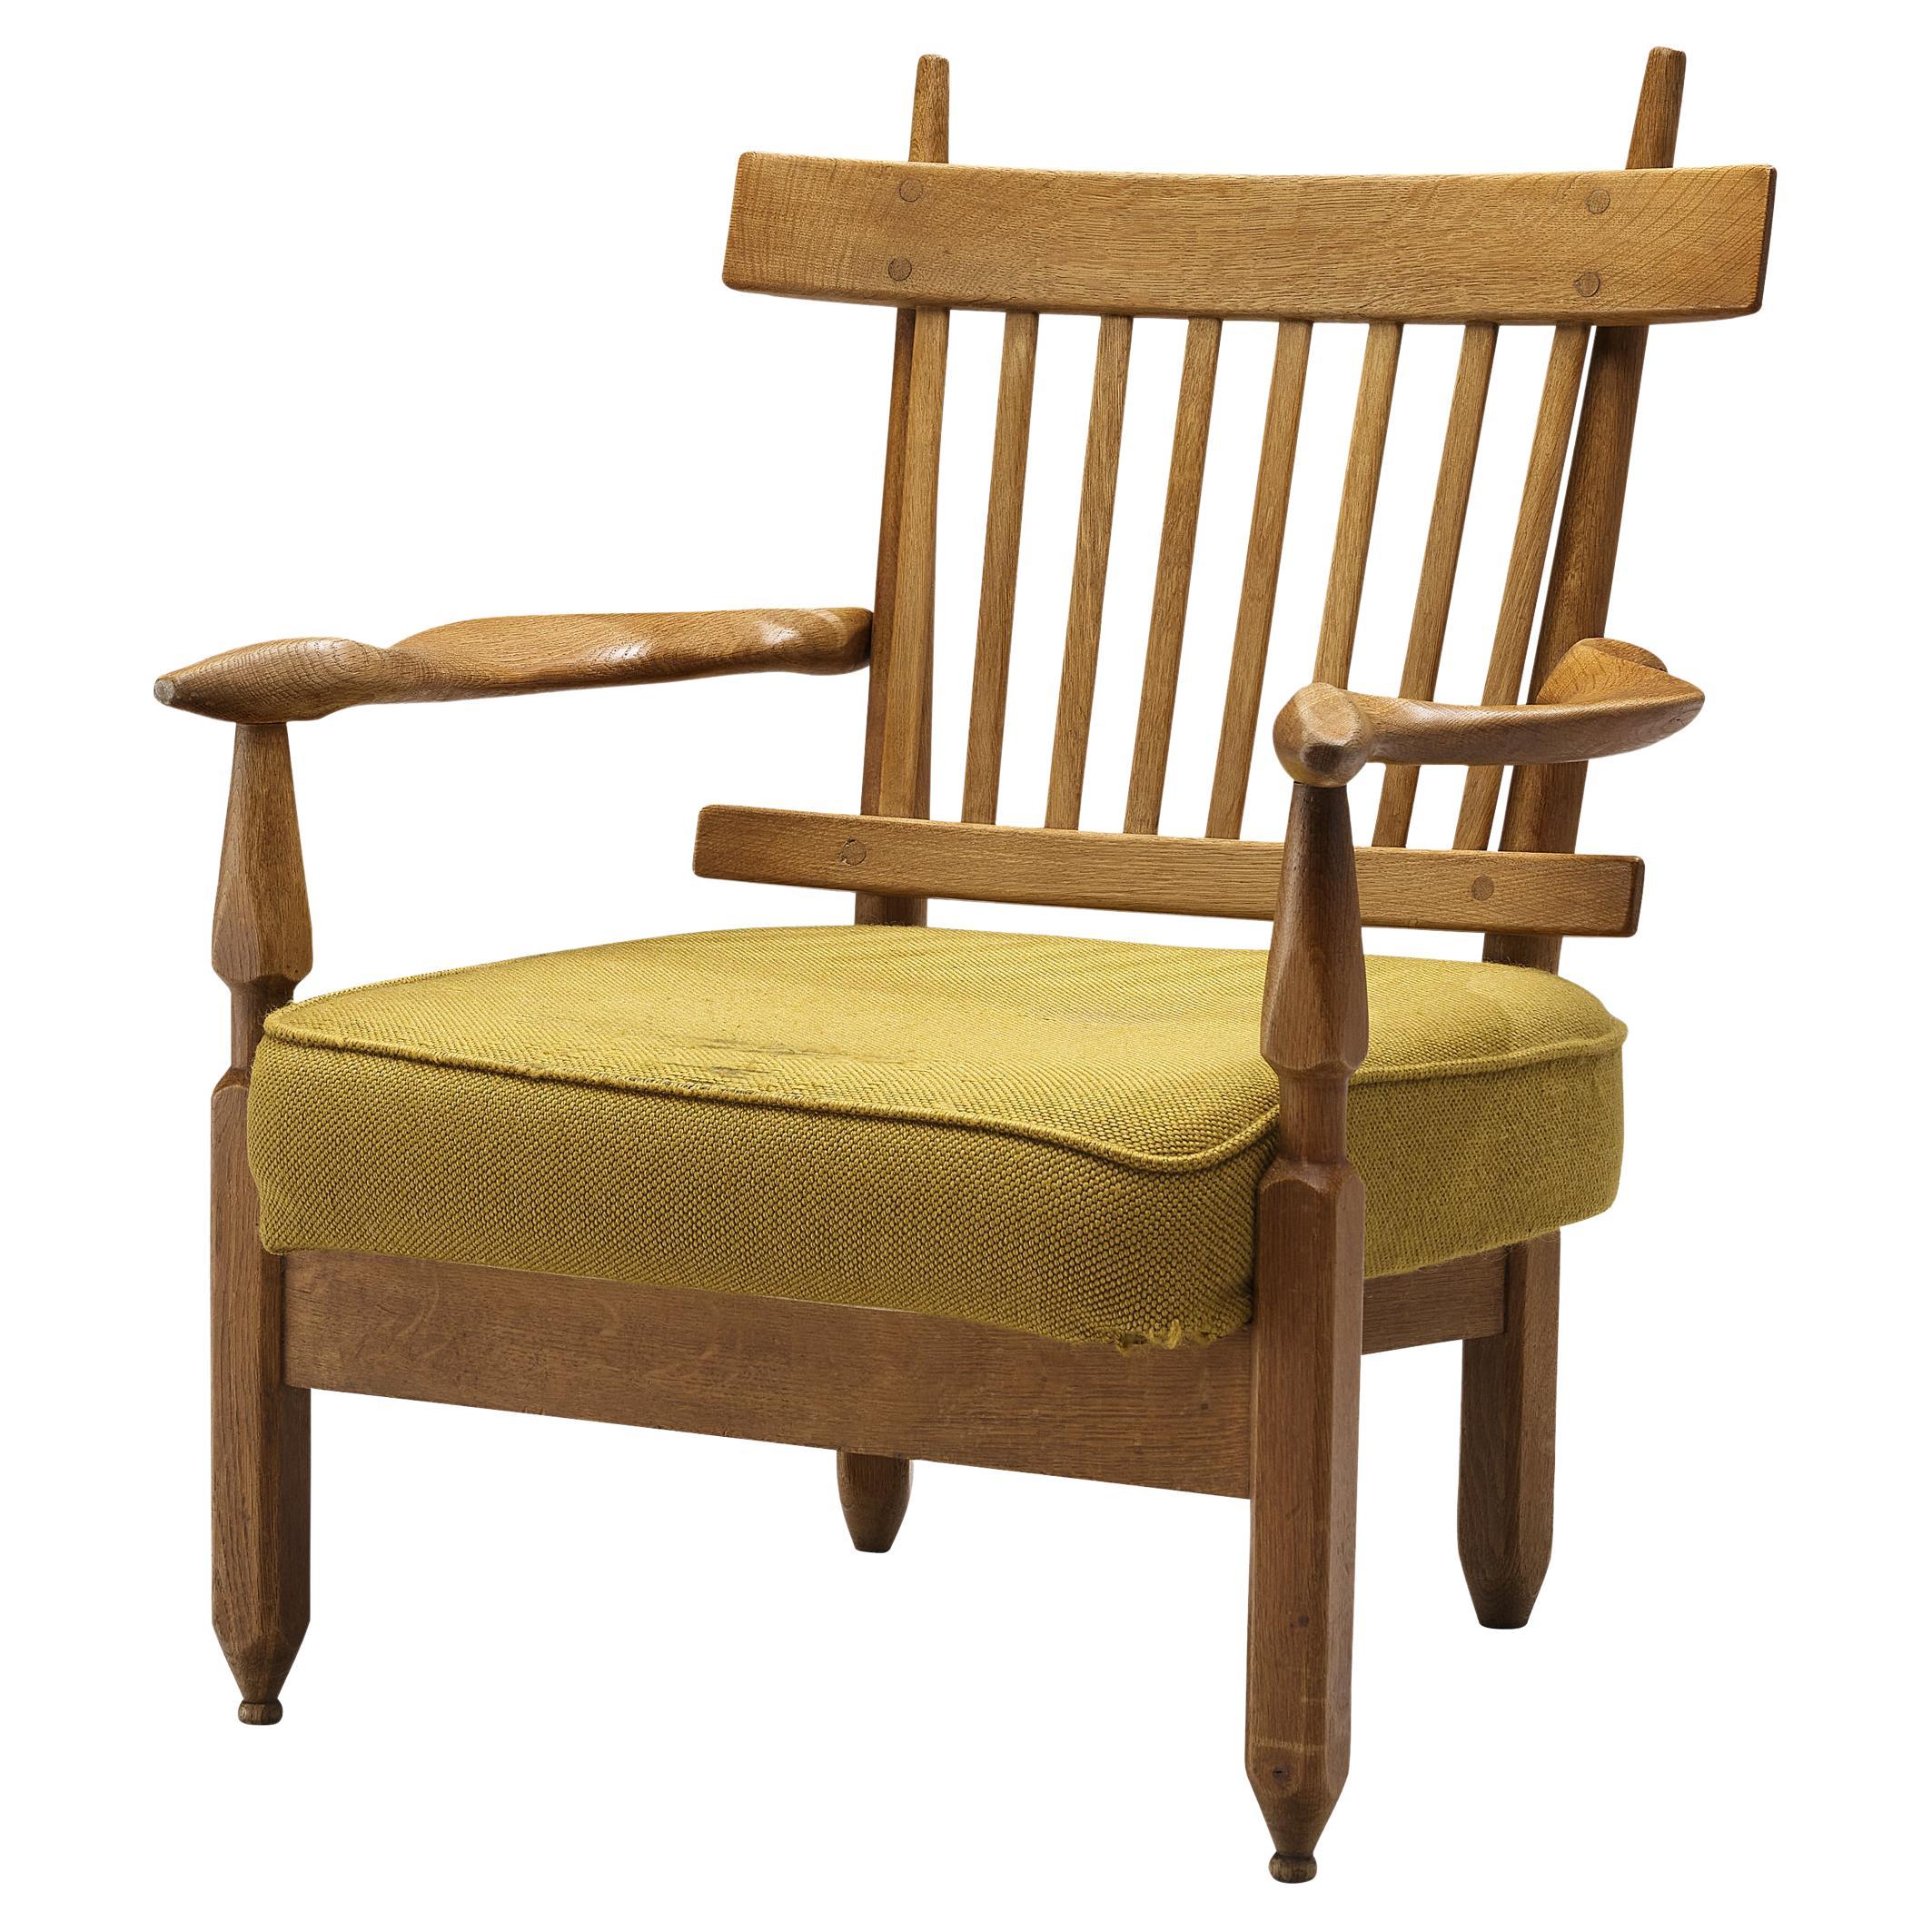 Chaise longue Petronille de Guillerme & Chambron, tapissée de chêne et de jaune